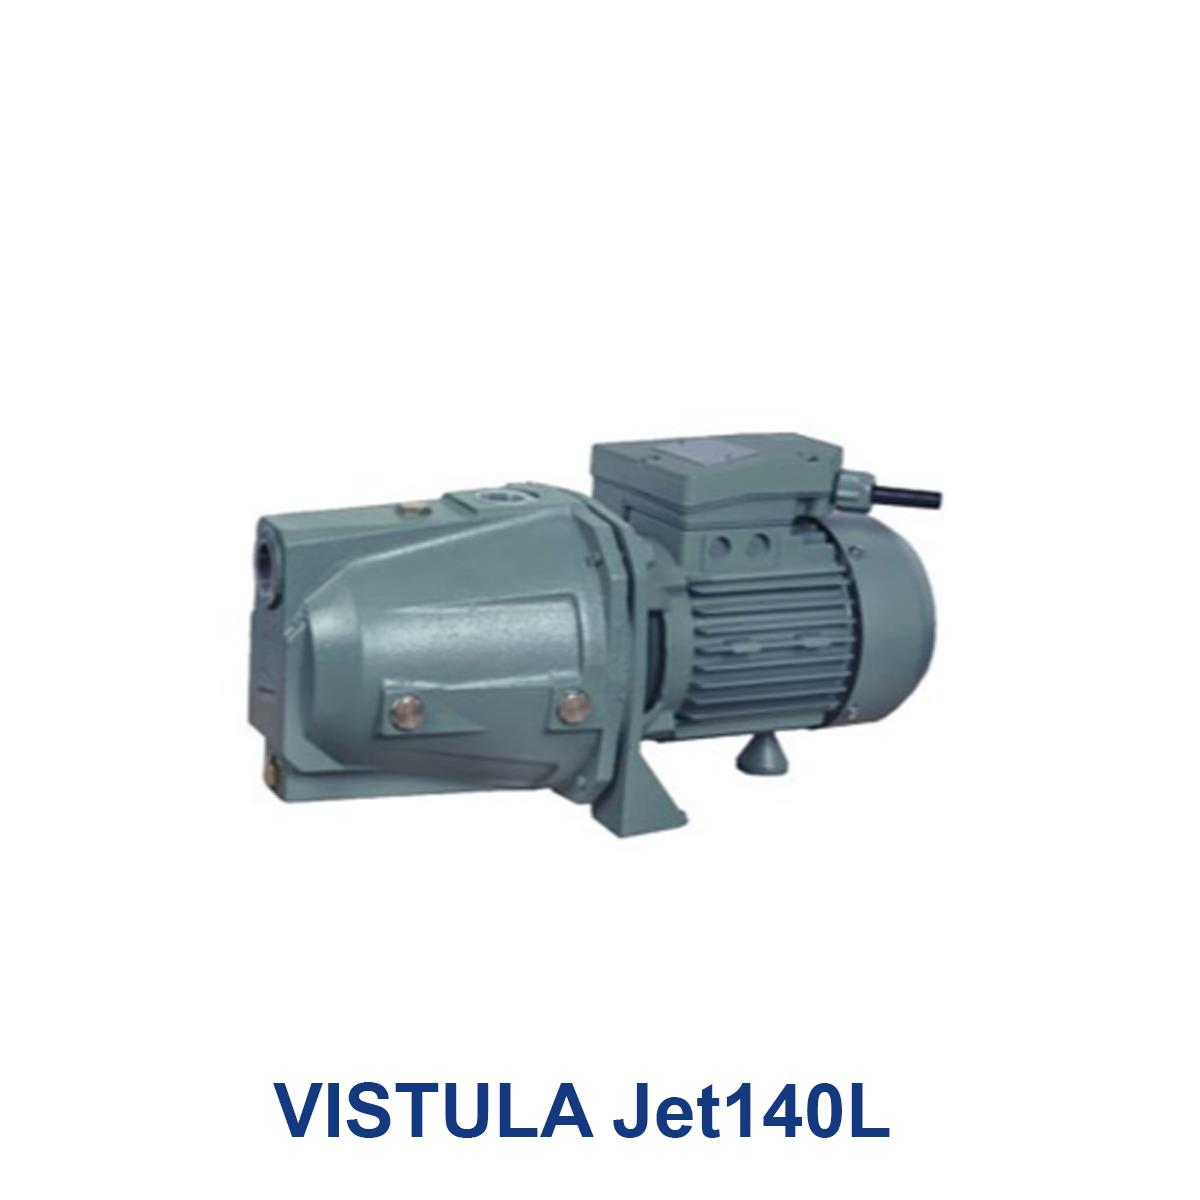 VISTULA-Jet140L